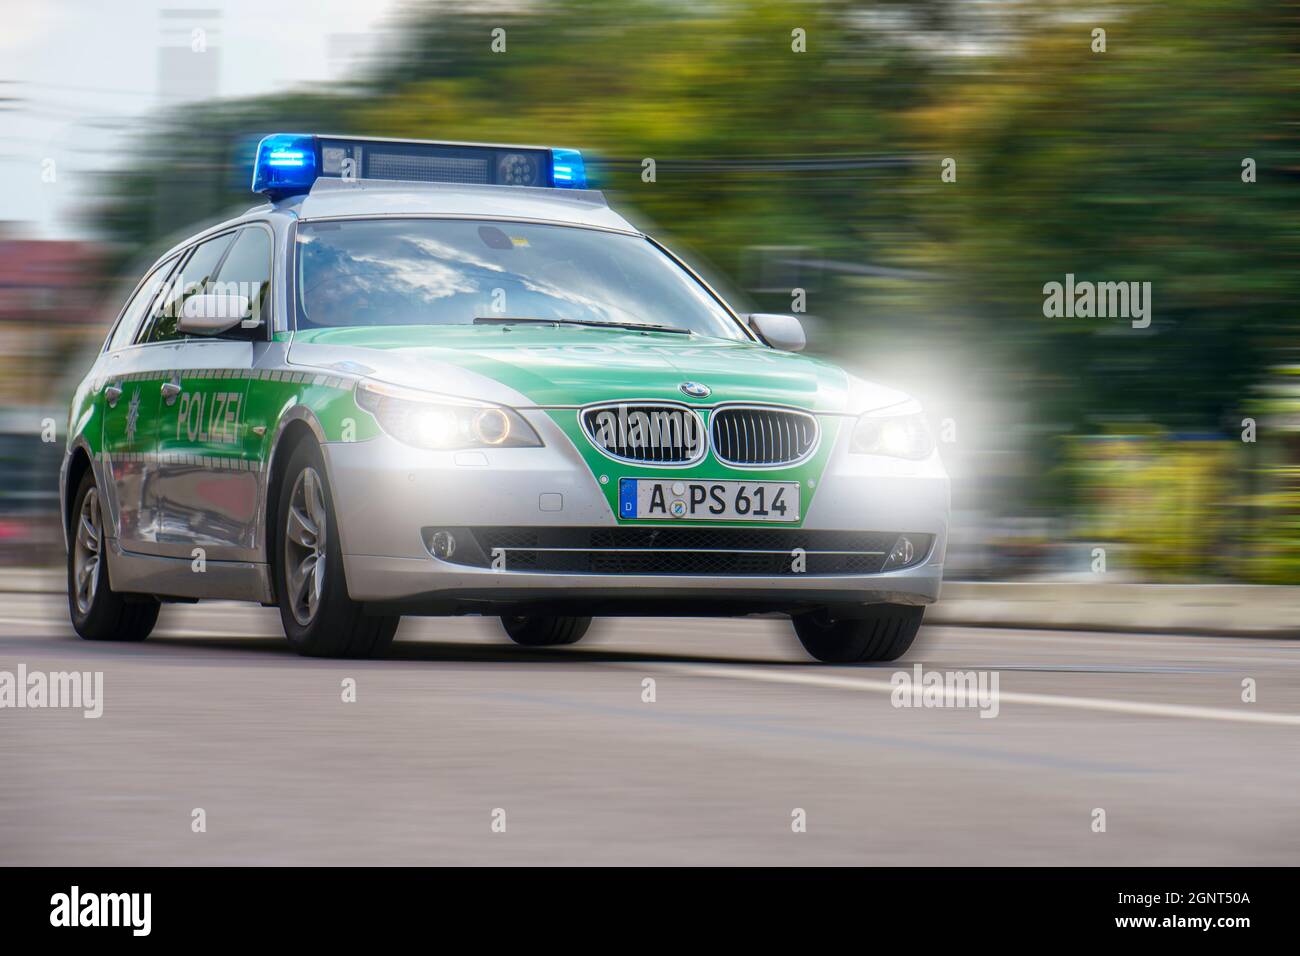 Ein Polizeiauto fährt mit hor Geschwindigkeit und Blaulicht durch die Stadt Augsburg Banque D'Images